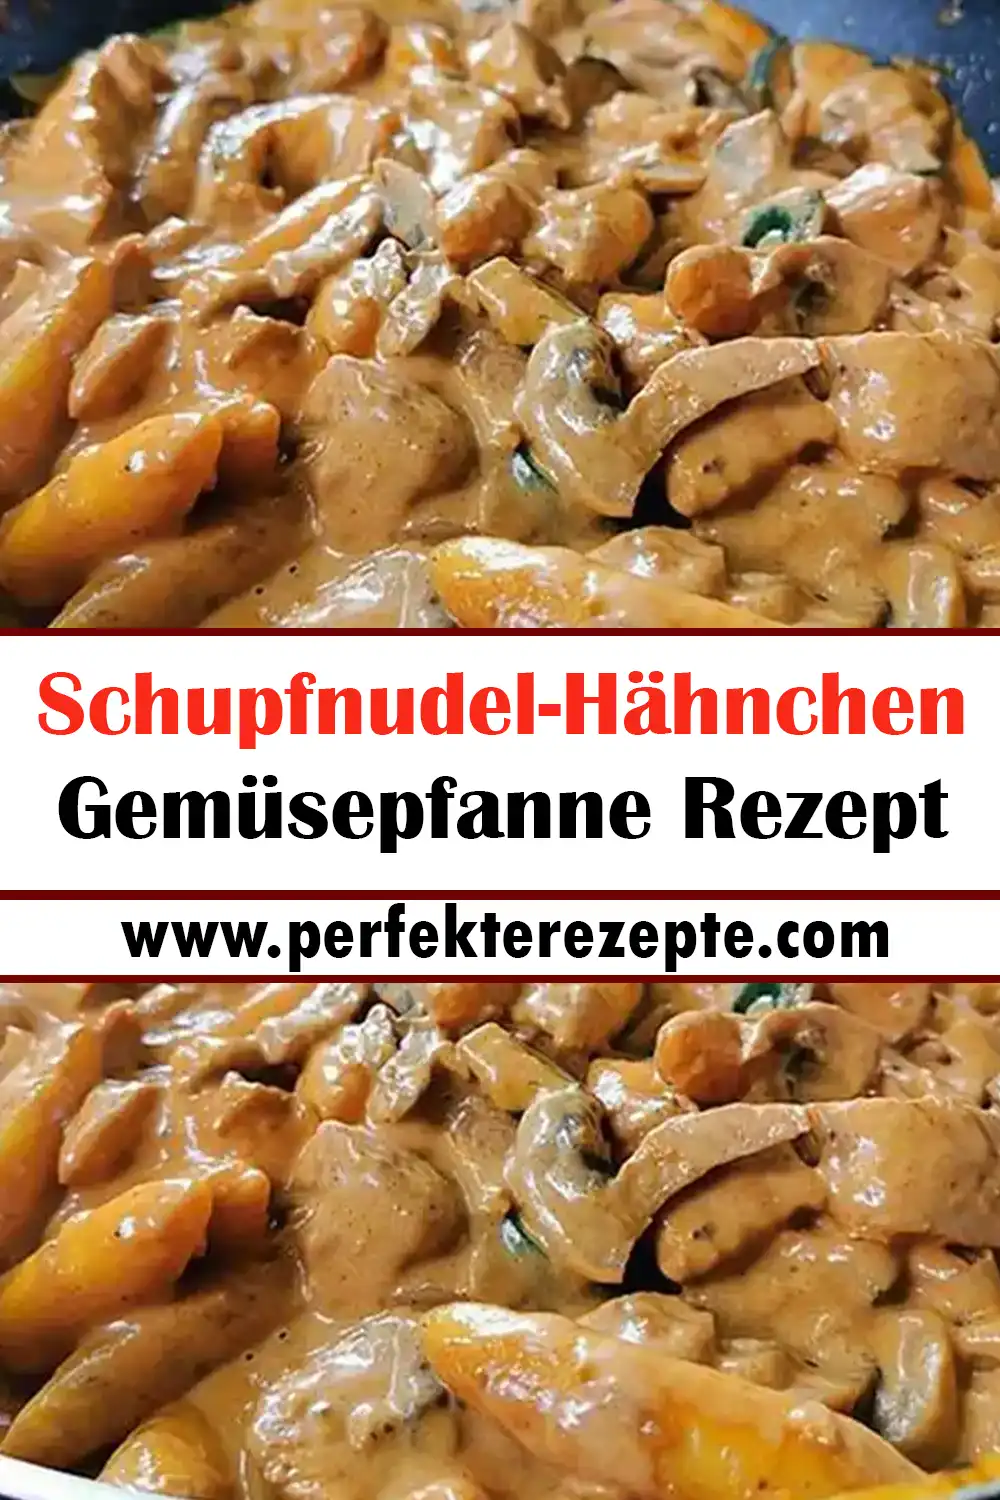 Schupfnudel-Hähnchen Gemüsepfanne Rezept